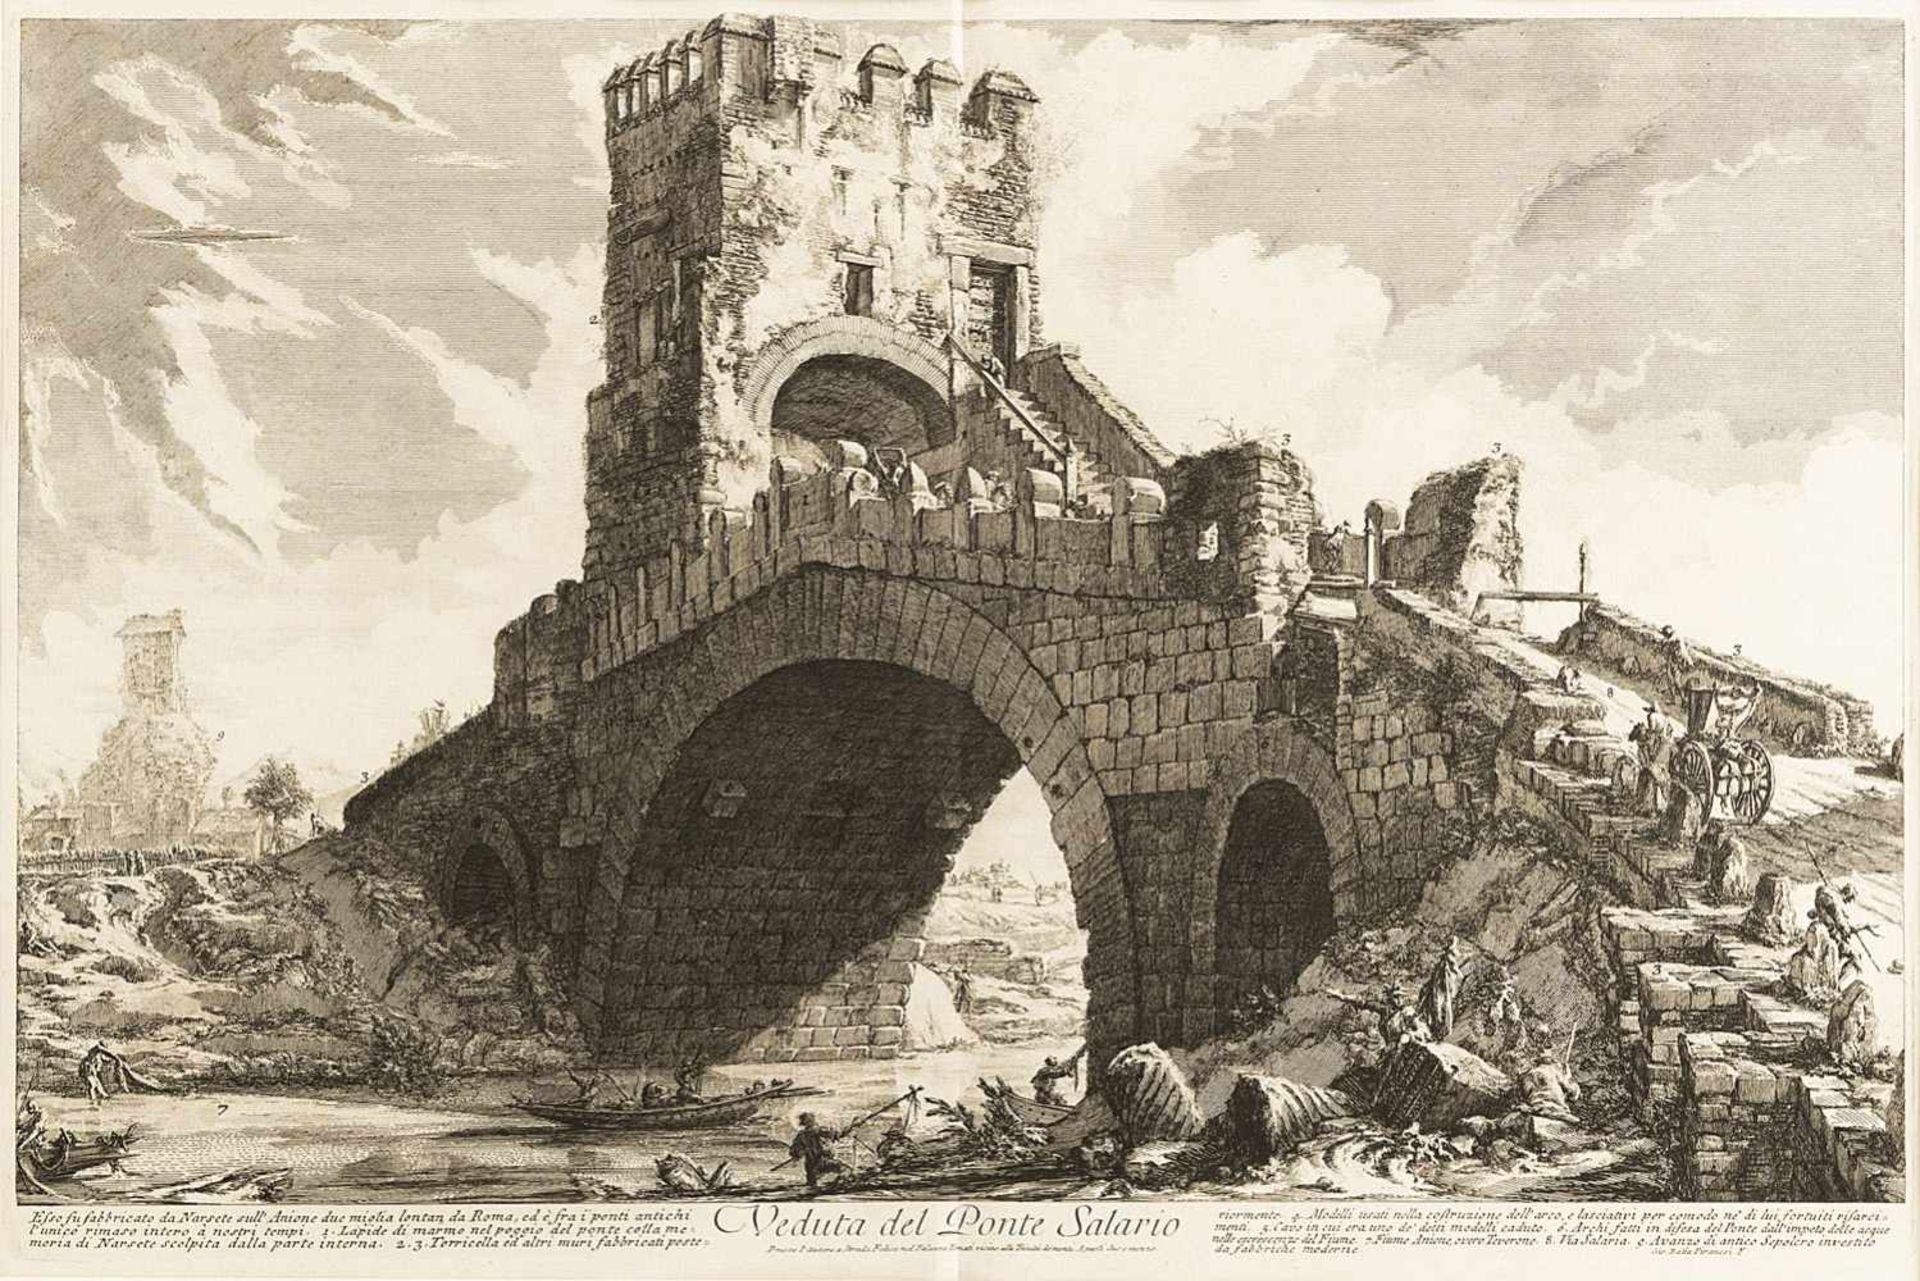 PIRANESI, GIOVANNI BATTISTA (1720-1778). Veduta del Ponte Solario. Etching. Ficacci 918, Focillon